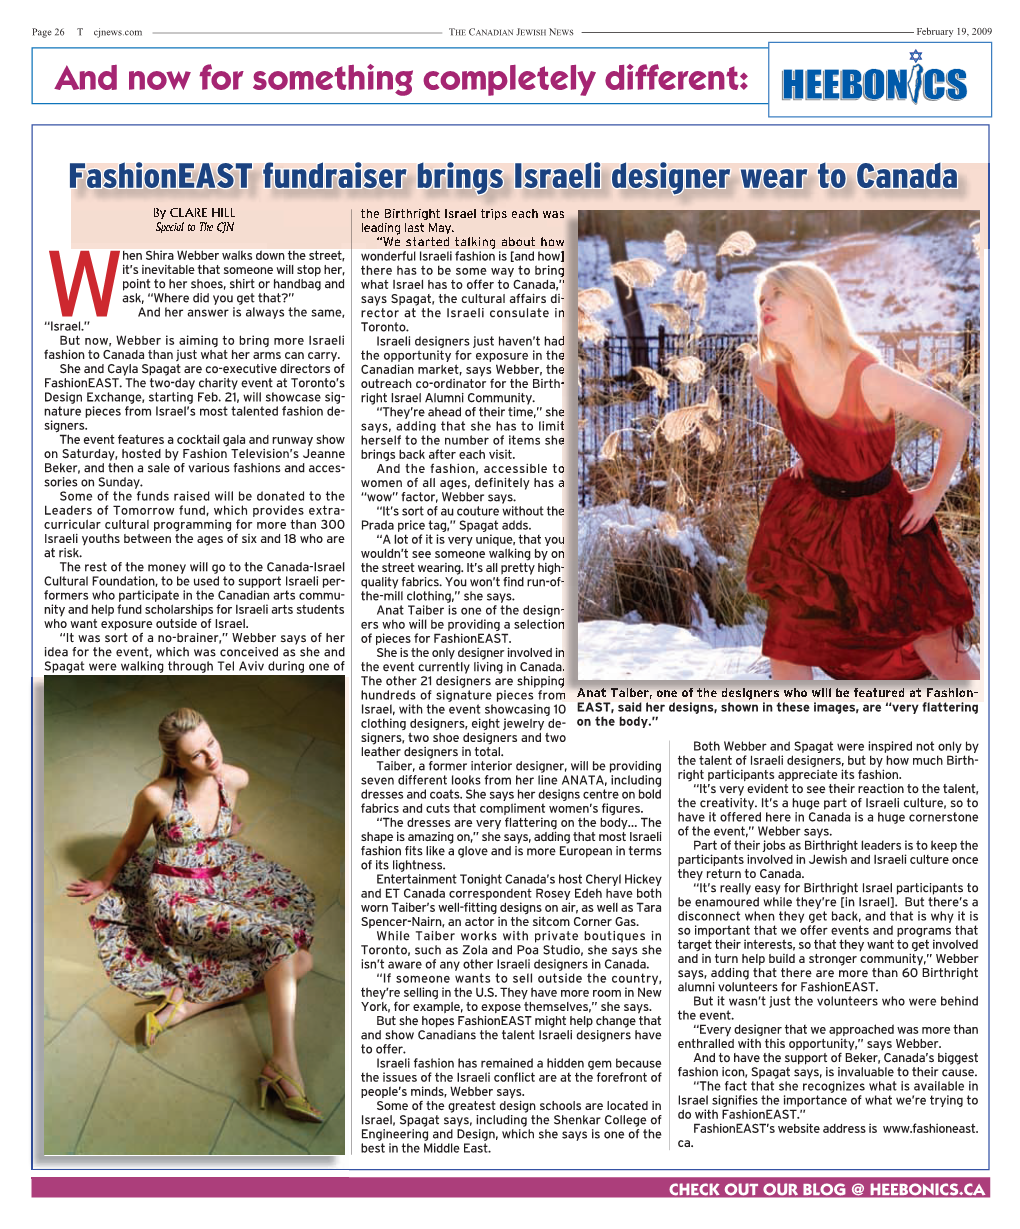 Fashioneast Fundraiser Brings Israeli Designer Wear to Canada